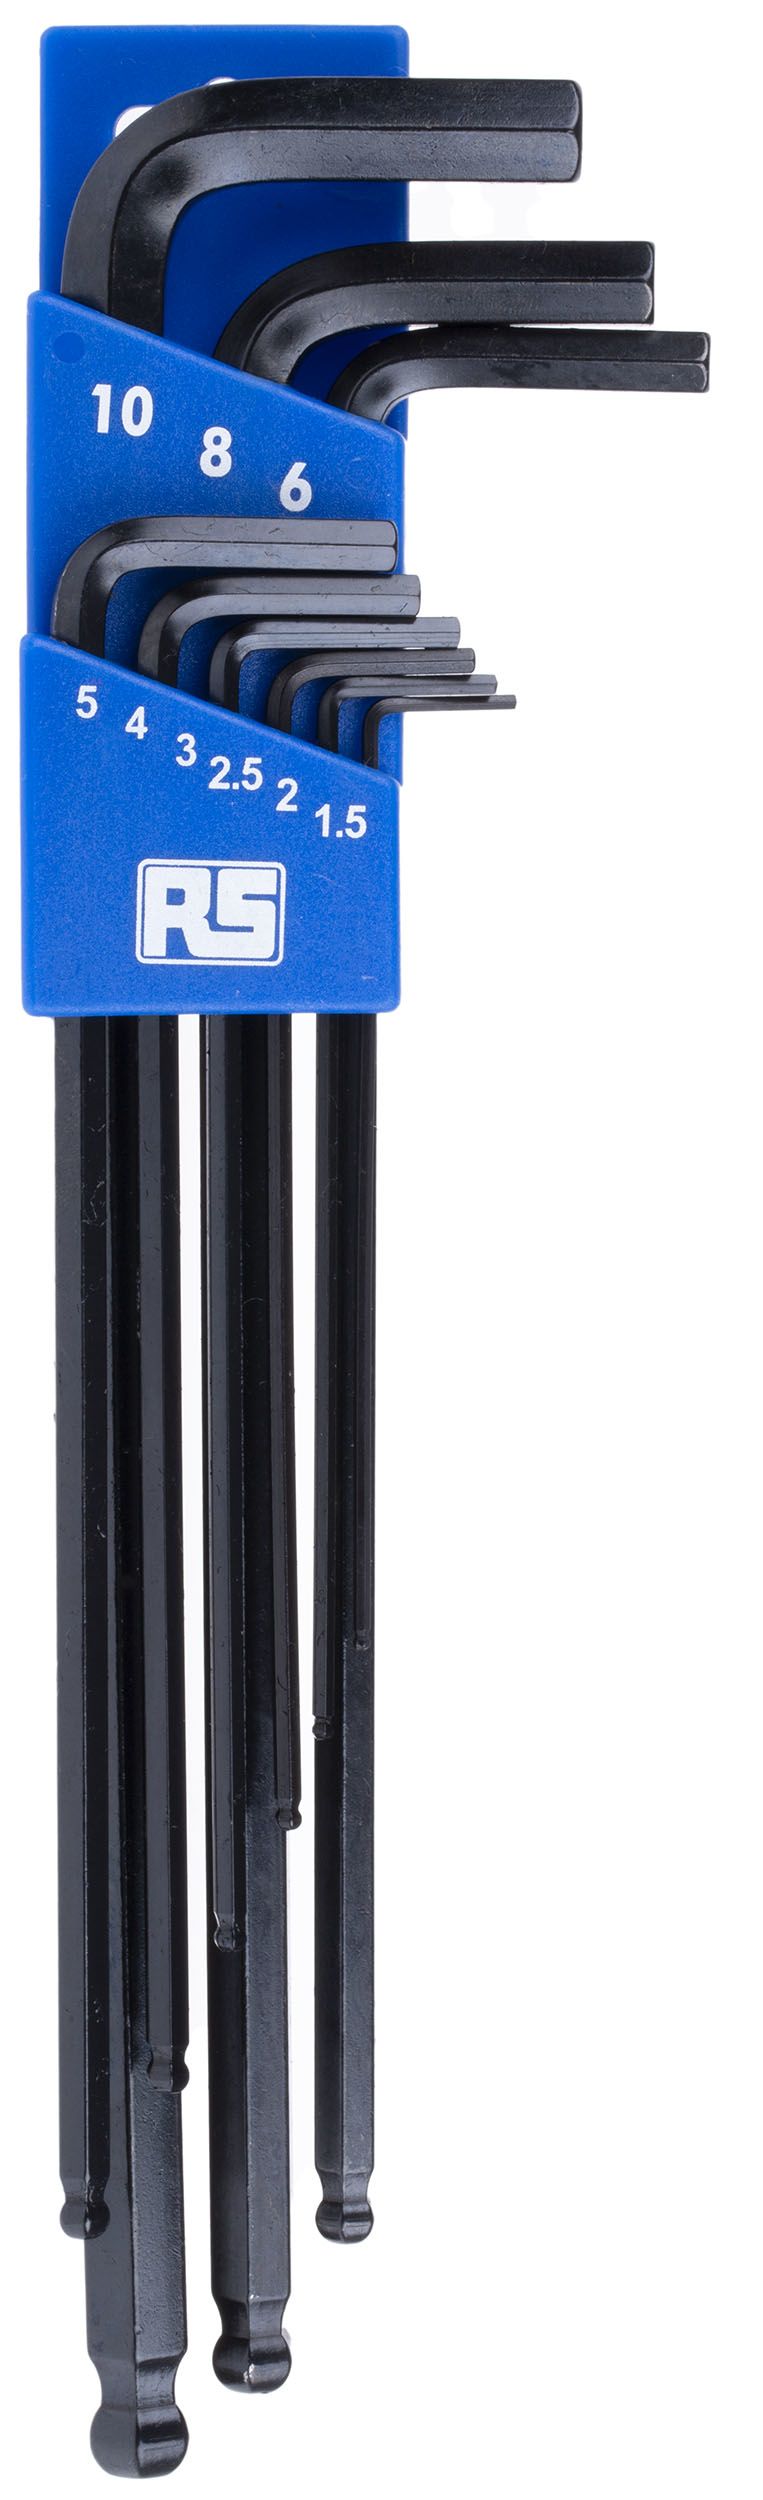 RS PRO 9 piece Hex Key Set,  L Shape 1.5 → 10mm Ball End